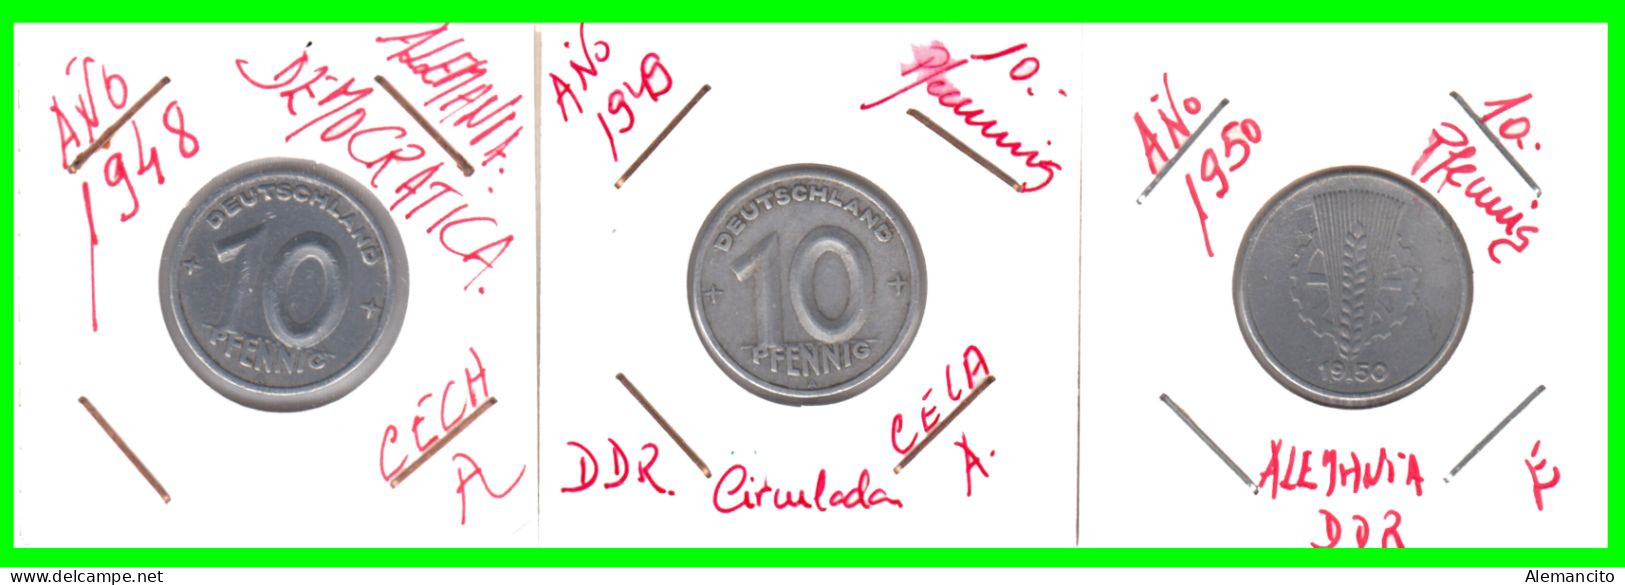 REPUBLICA DEMOCRATICA DE ALEMANIA ( DDR ) 3 MONEDAS DE 10 PFENNING AÑO - 1948 - 1949 - CECA - A - Y - 1950 -   CECA - E - 10 Pfennig